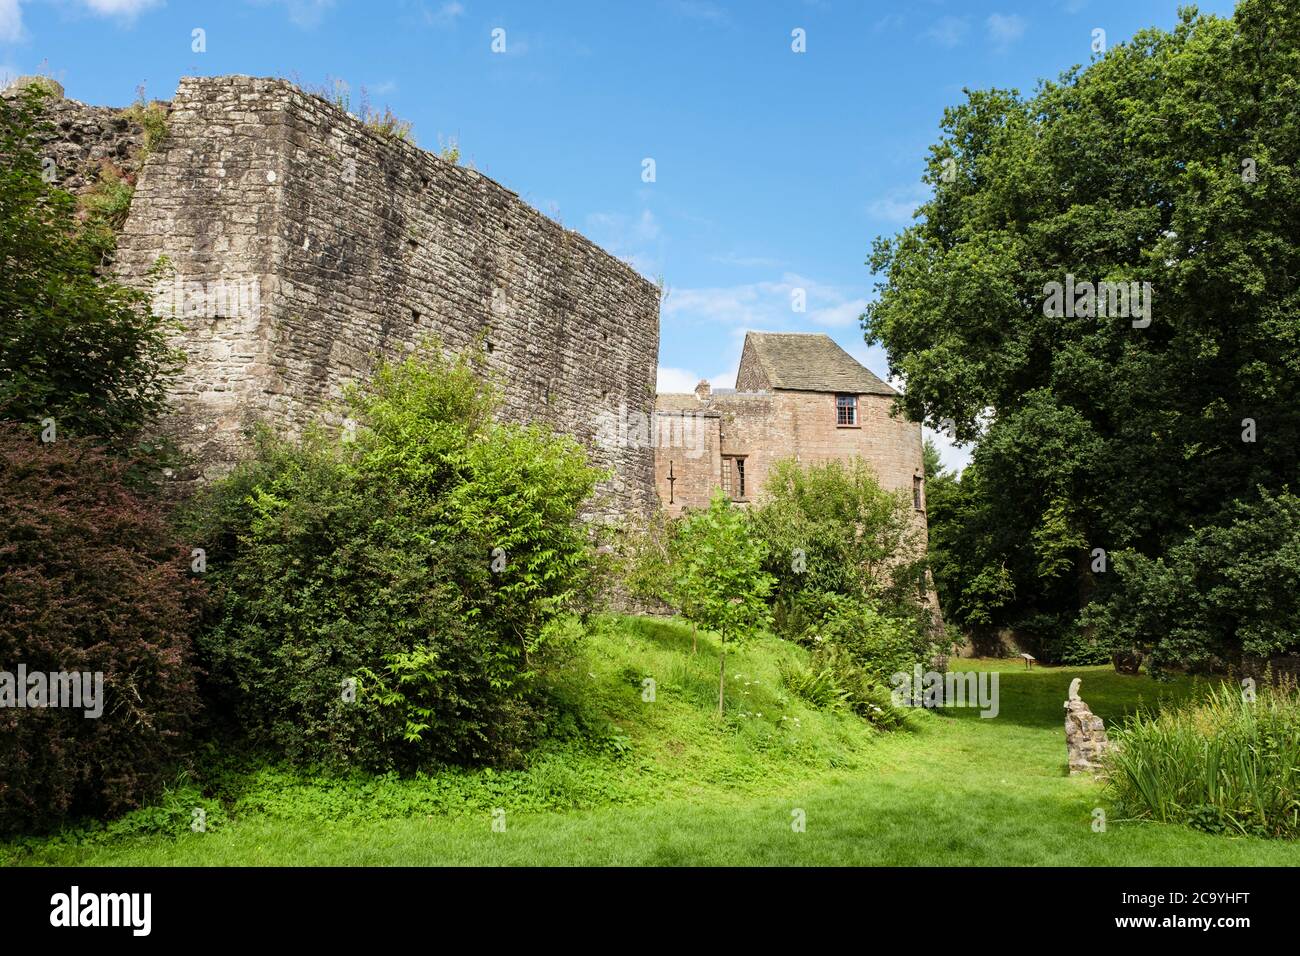 Murs et jardin de douves du château normand du XIIe siècle. Maintenant une auberge de jeunesse. St Briavel's, Forest of Dean district, Gloucestershire, Angleterre, Royaume-Uni, Grande-Bretagne Banque D'Images